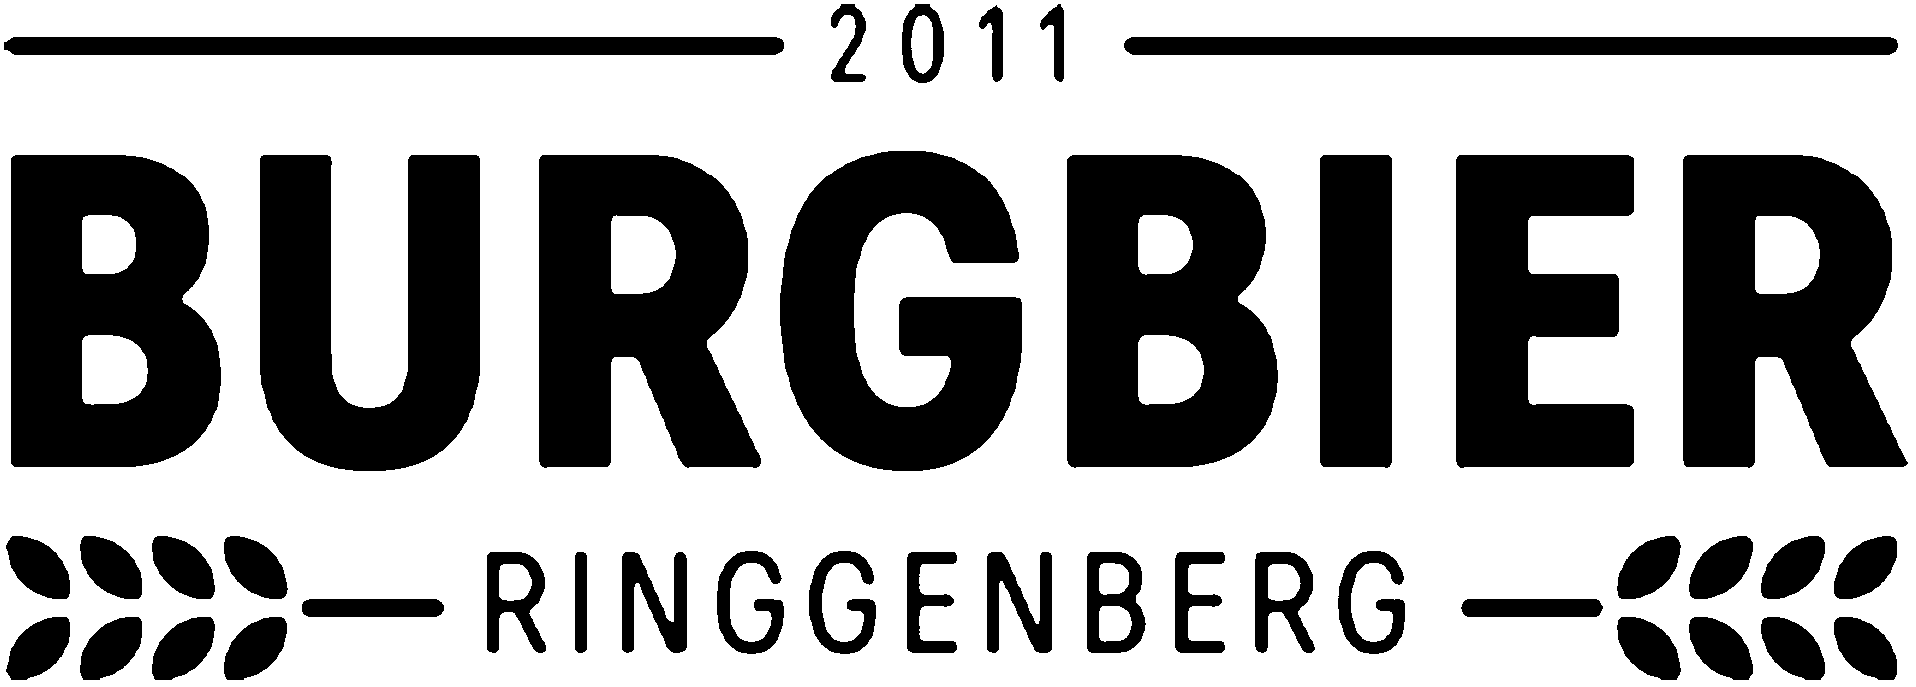 Burgbier